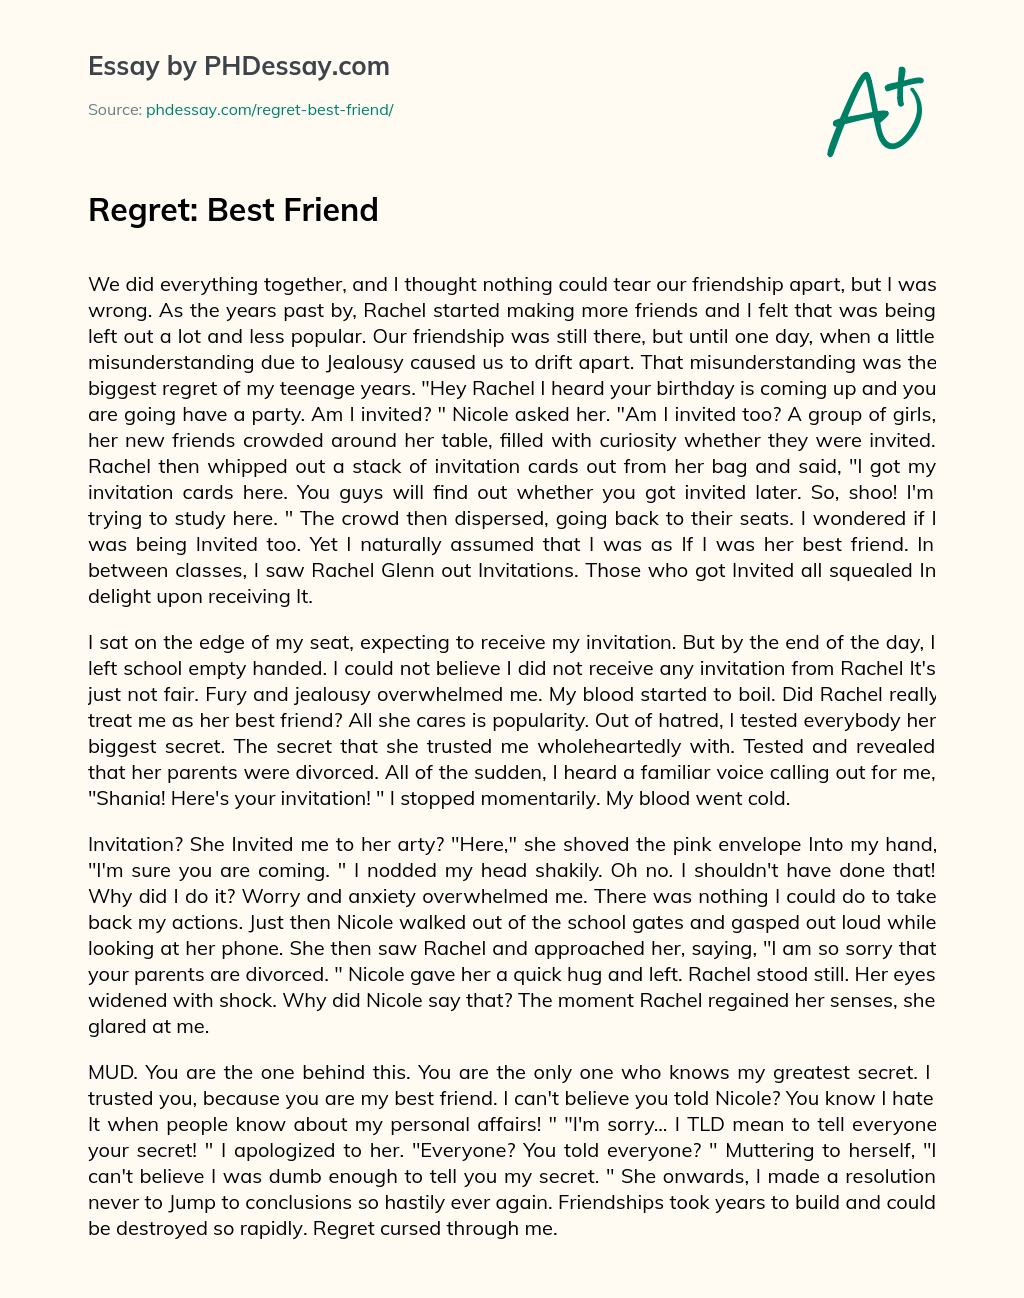 Regret: Best Friend essay